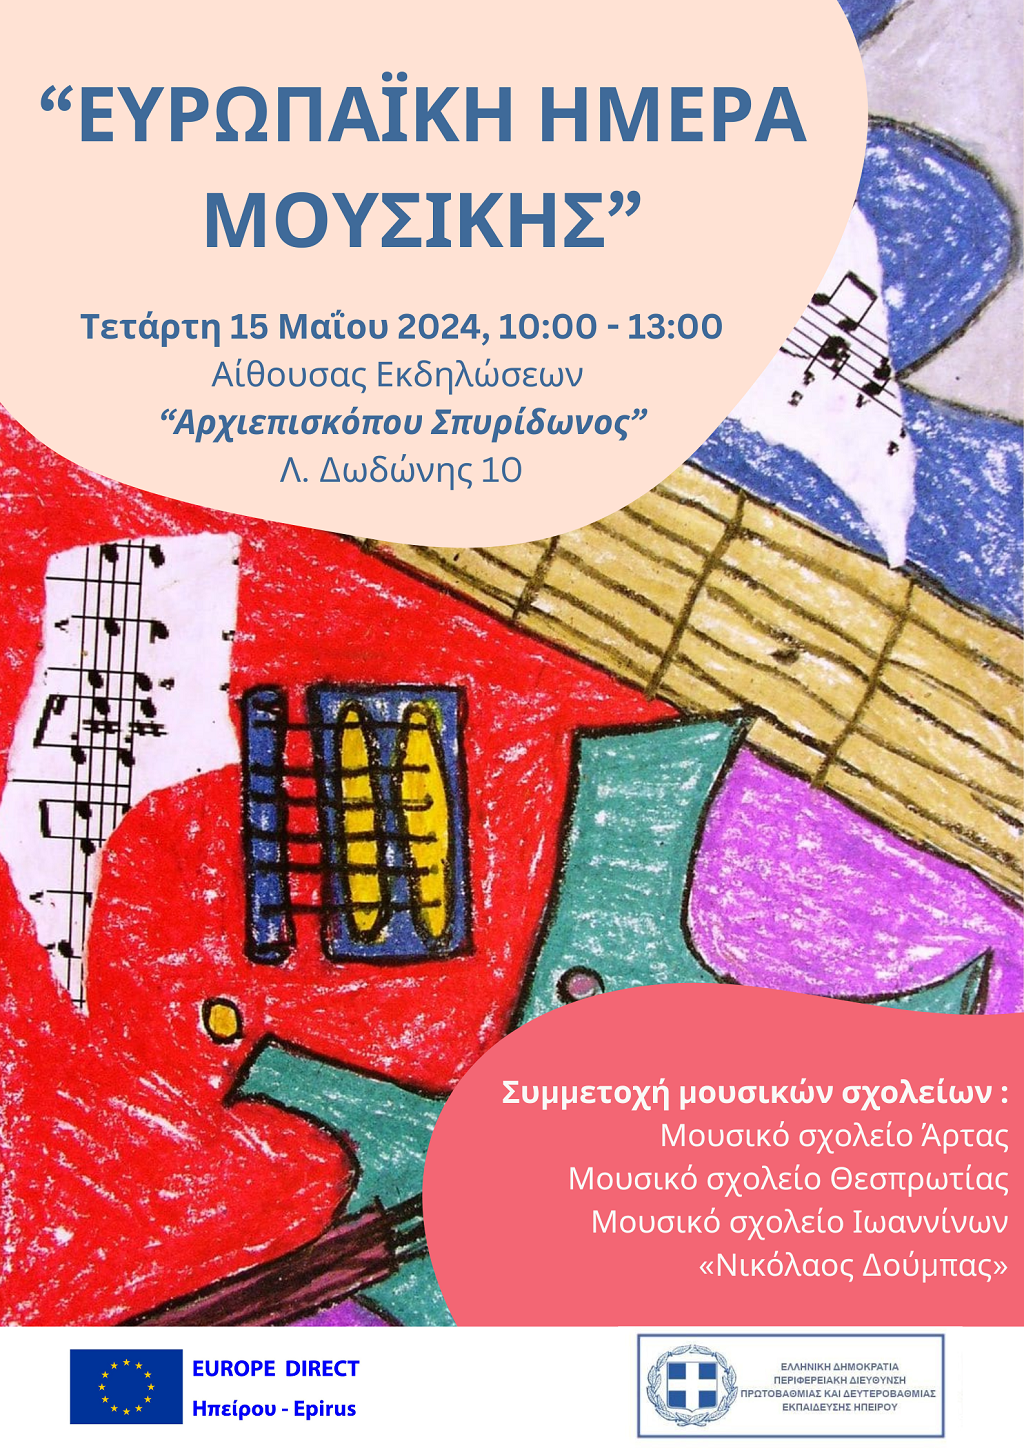 Ιωάννινα: Εκδήλωση για την «Ευρωπαϊκή Ημέρα Μουσικής»